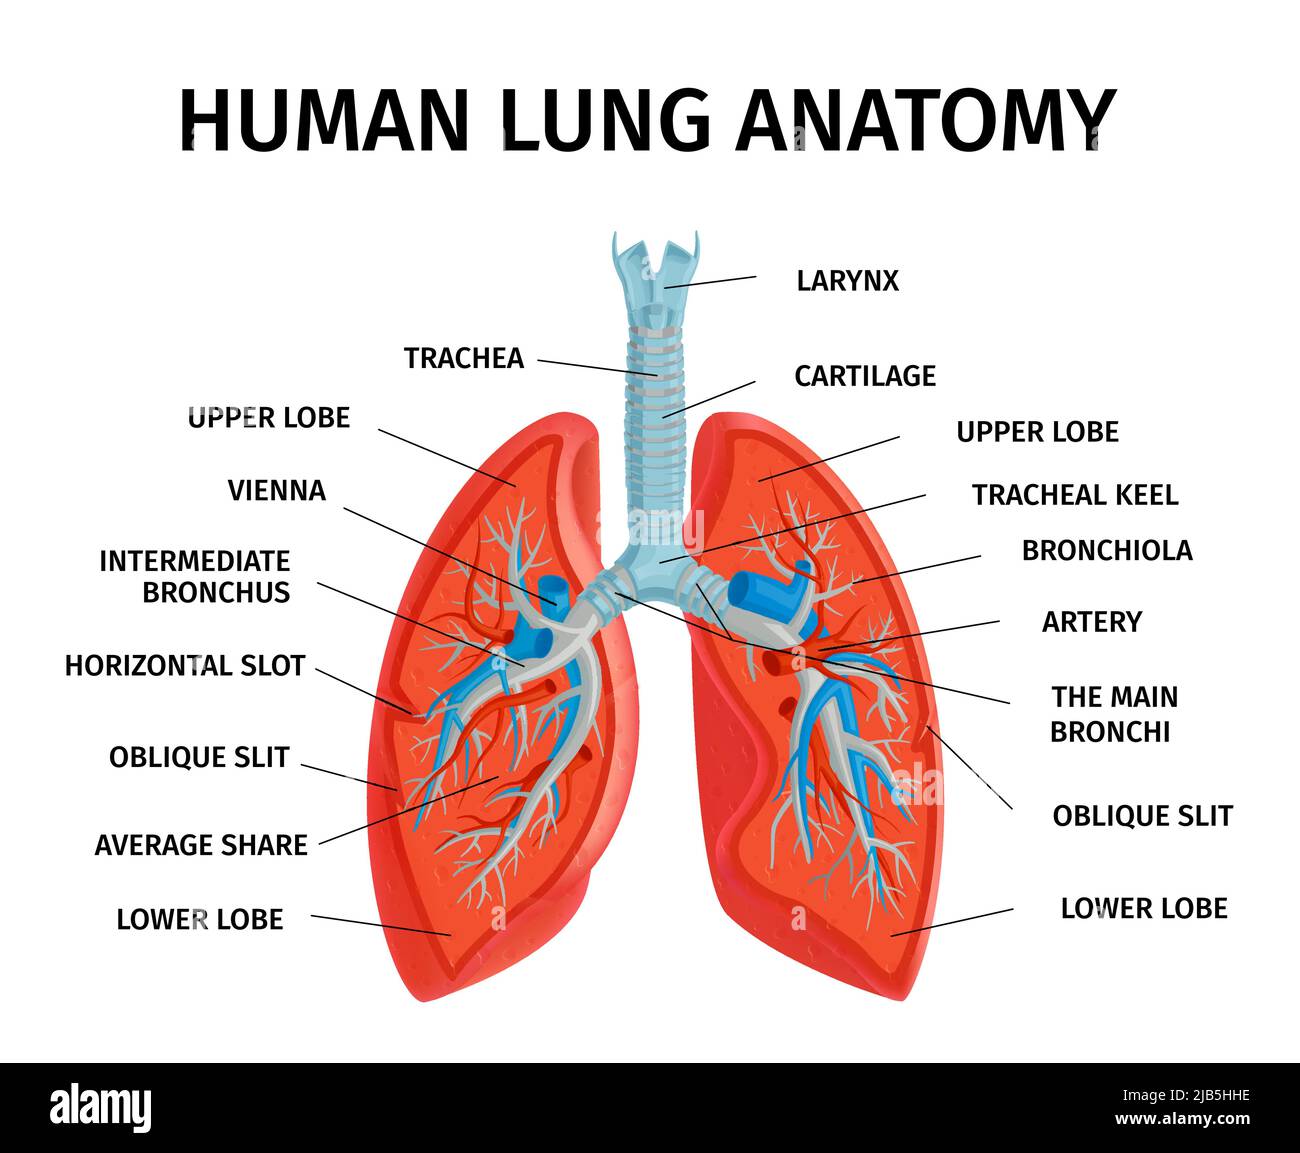 Anatomie des menschlichen Lungenrespiratorsystems Anatomiediagramm medizinisch pädagogisch Klassenzimmer Referenzdiagramm Poster weißer Hintergrund Vektorgrafik Stock Vektor